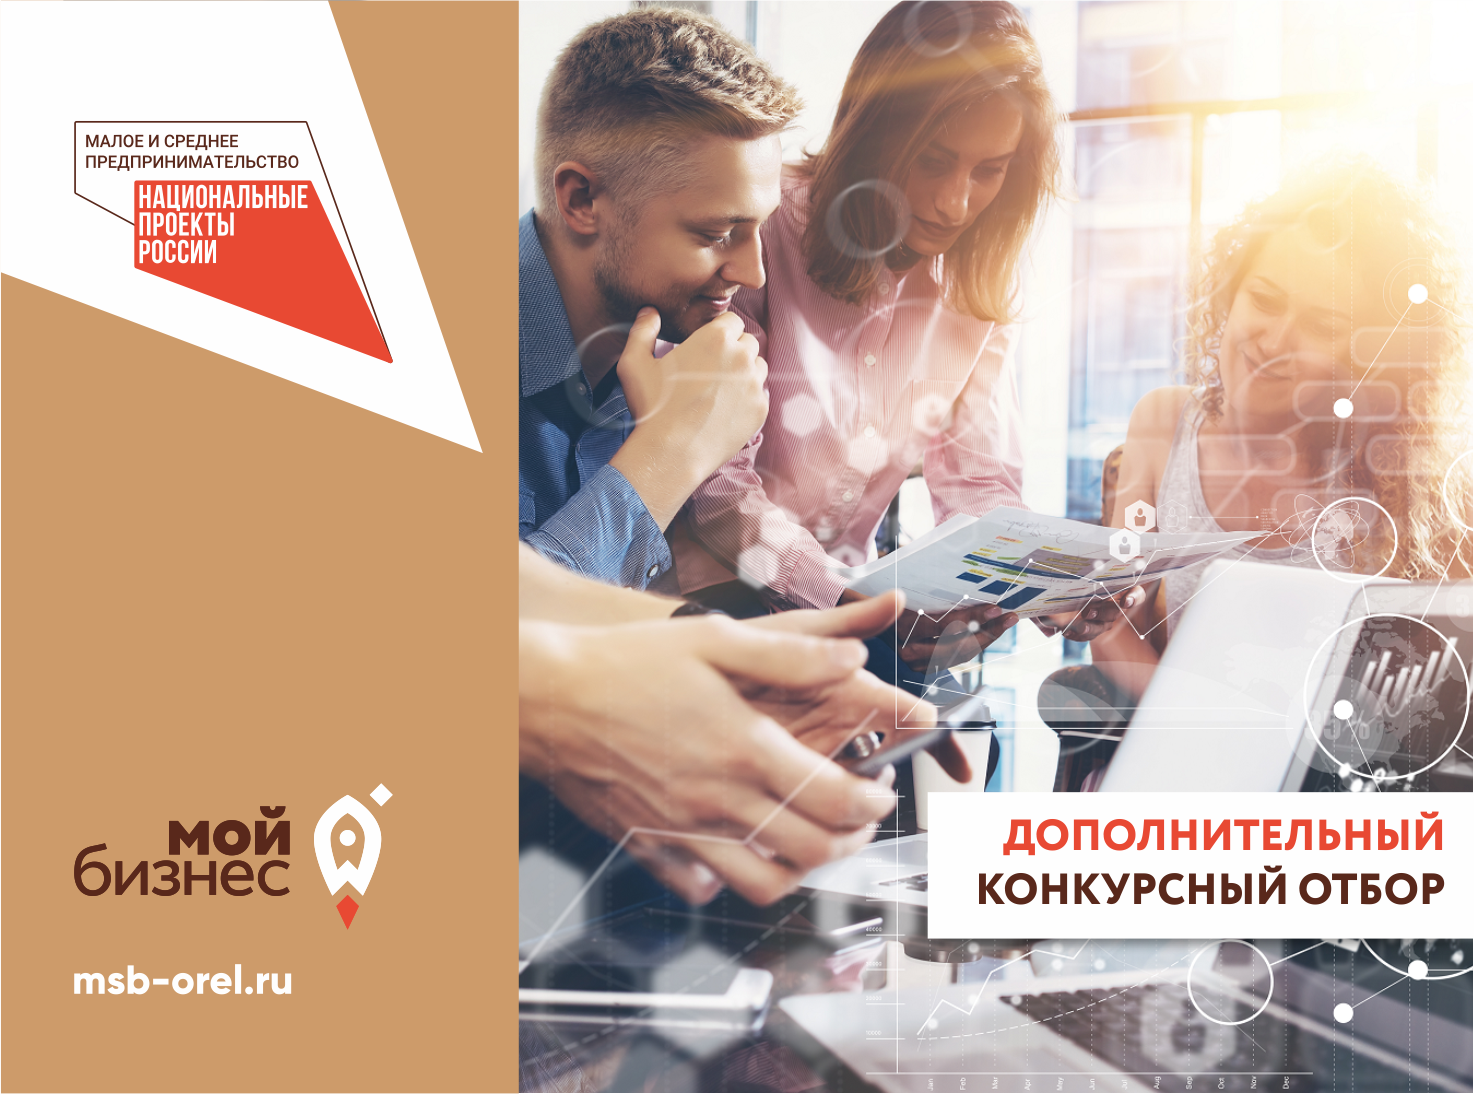 Вниманию орловских предпринимателей: объявлен дополнительный конкурсный отбор на предоставление грантов